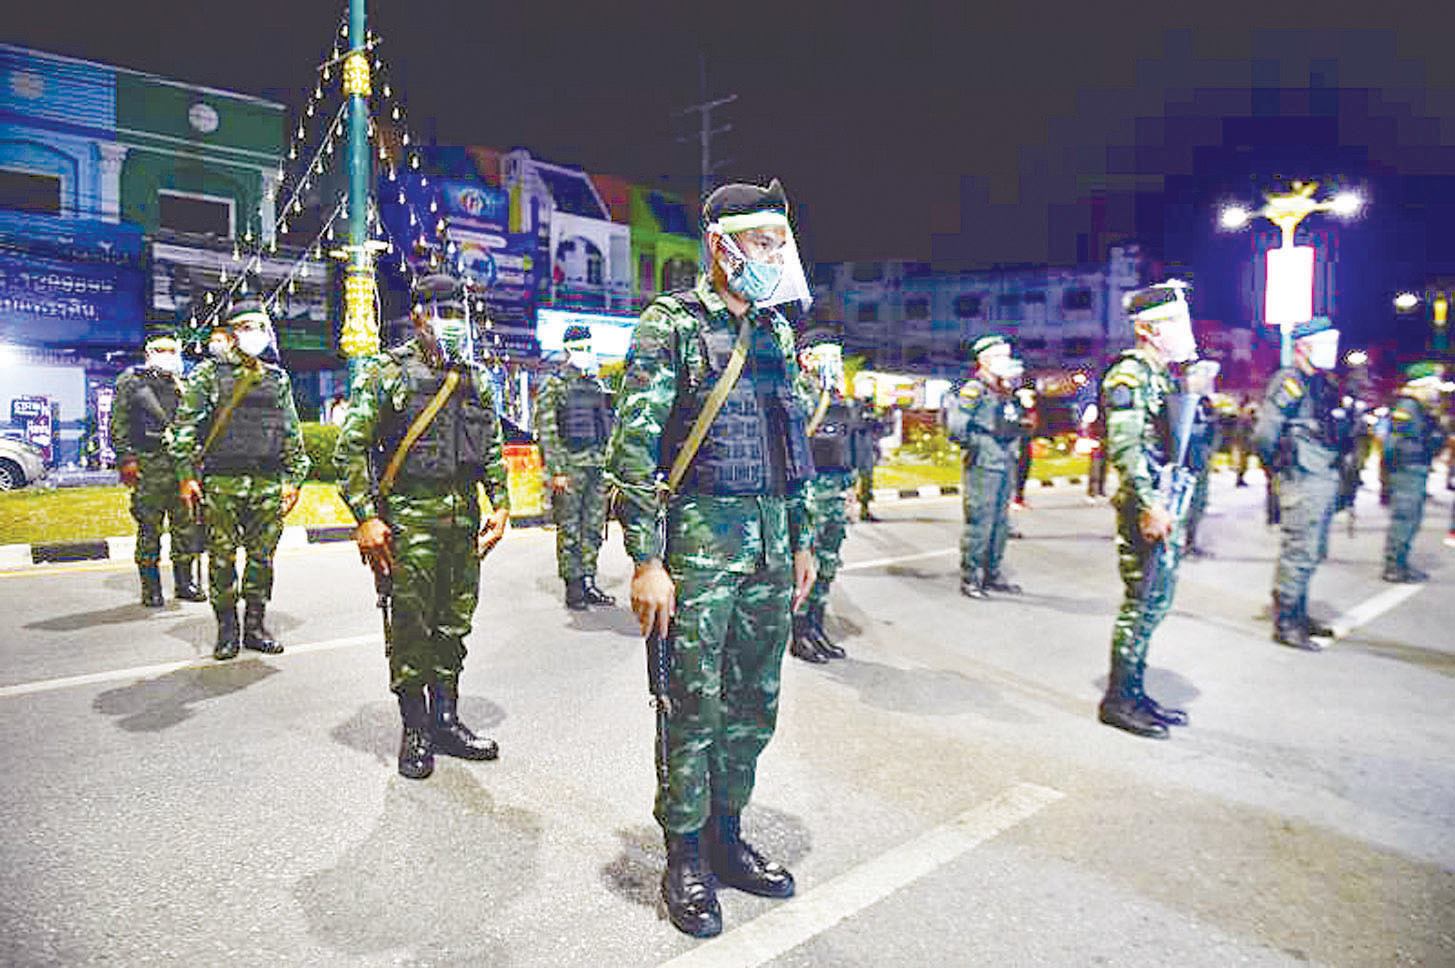 ကန့်ကွက်မှုများရှိသော်လည်း ထိုင်းအစိုးရက နိုင်ငံတော်အရေးပေါ်အခြေအနေကြေညာထားမှုကို အချိန်ထပ်တိုး